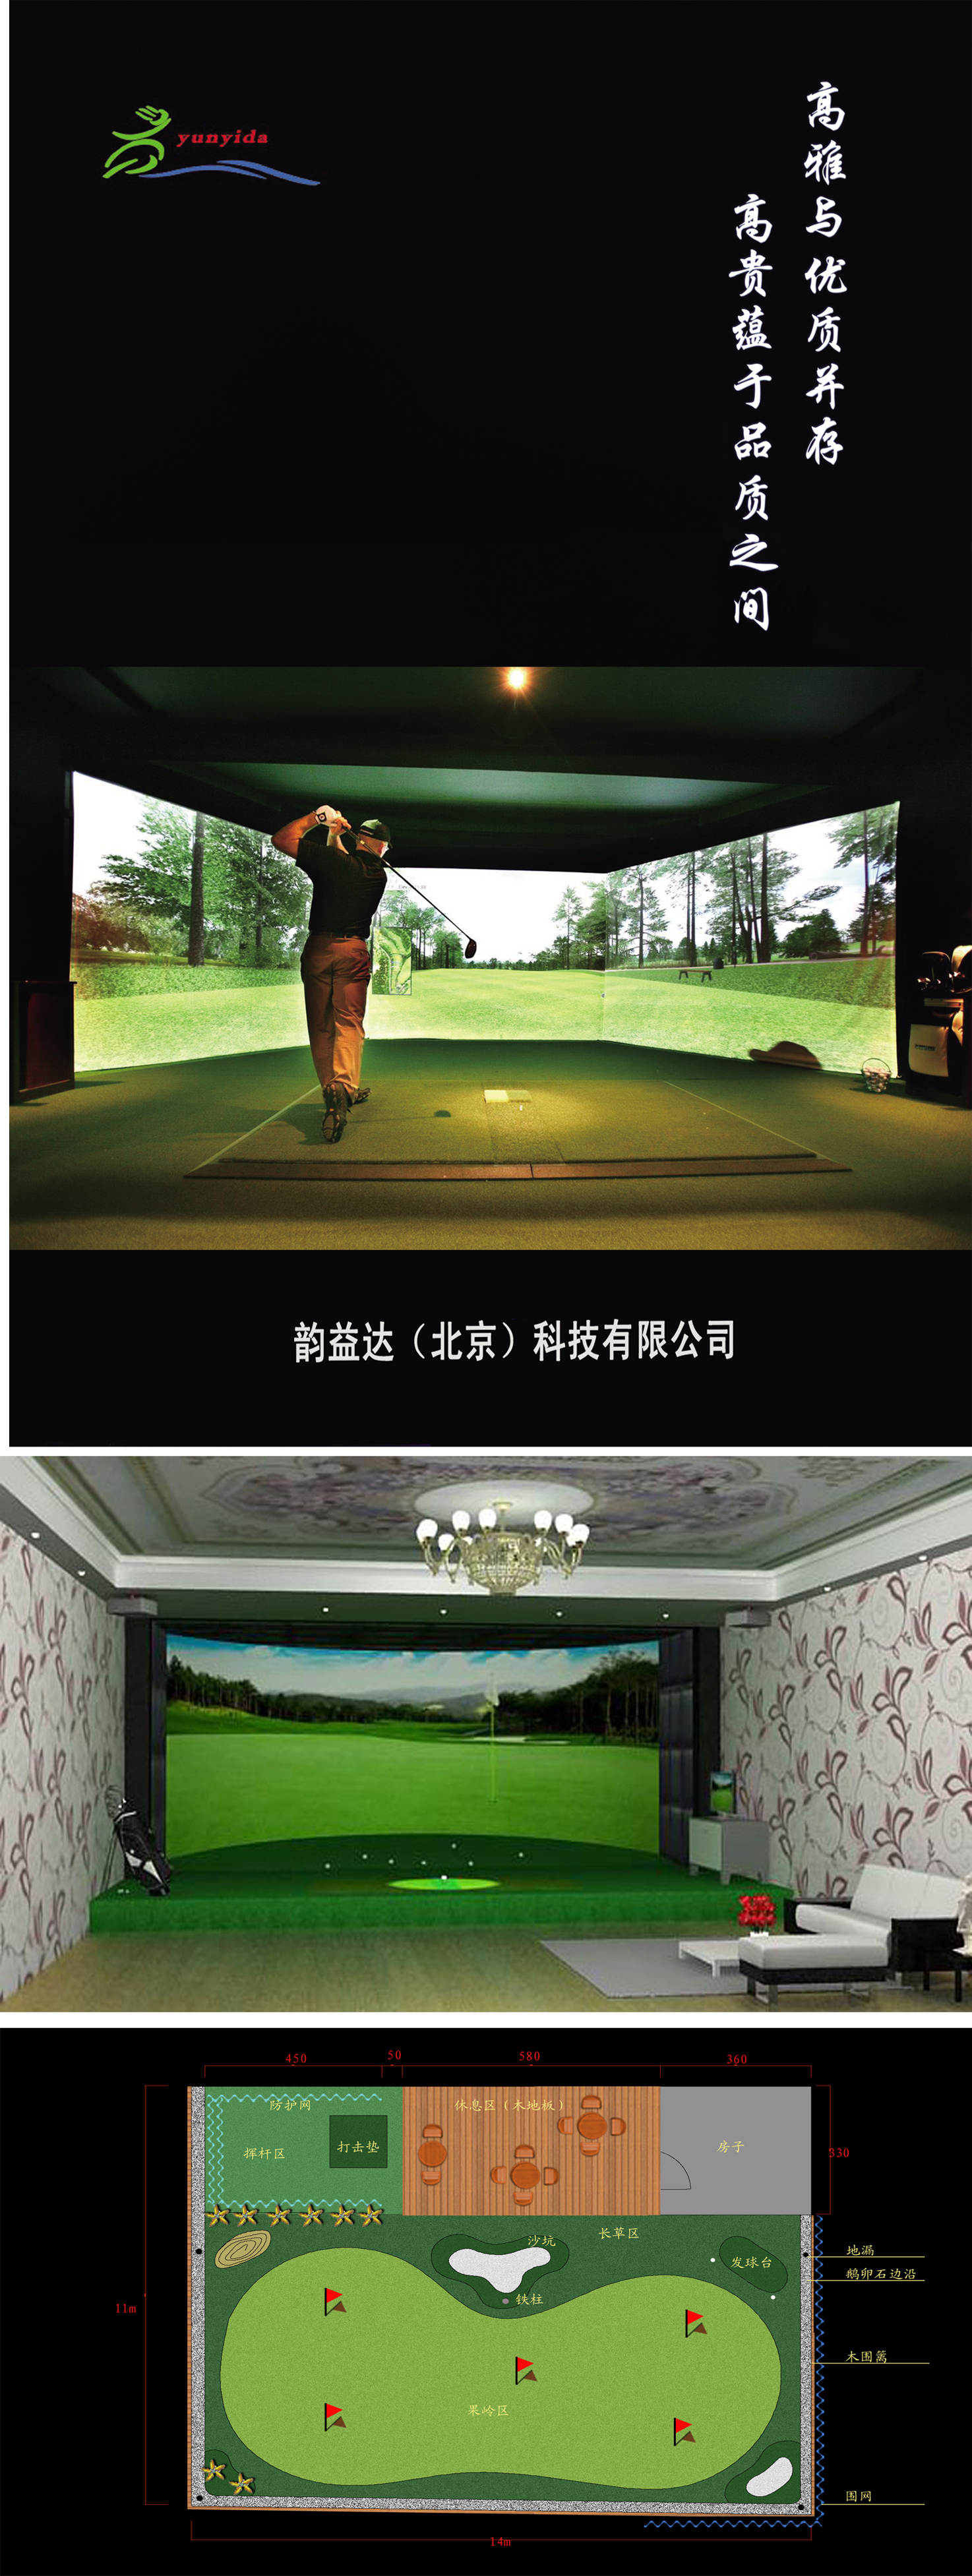 室内高尔夫模拟软件 6.jpg